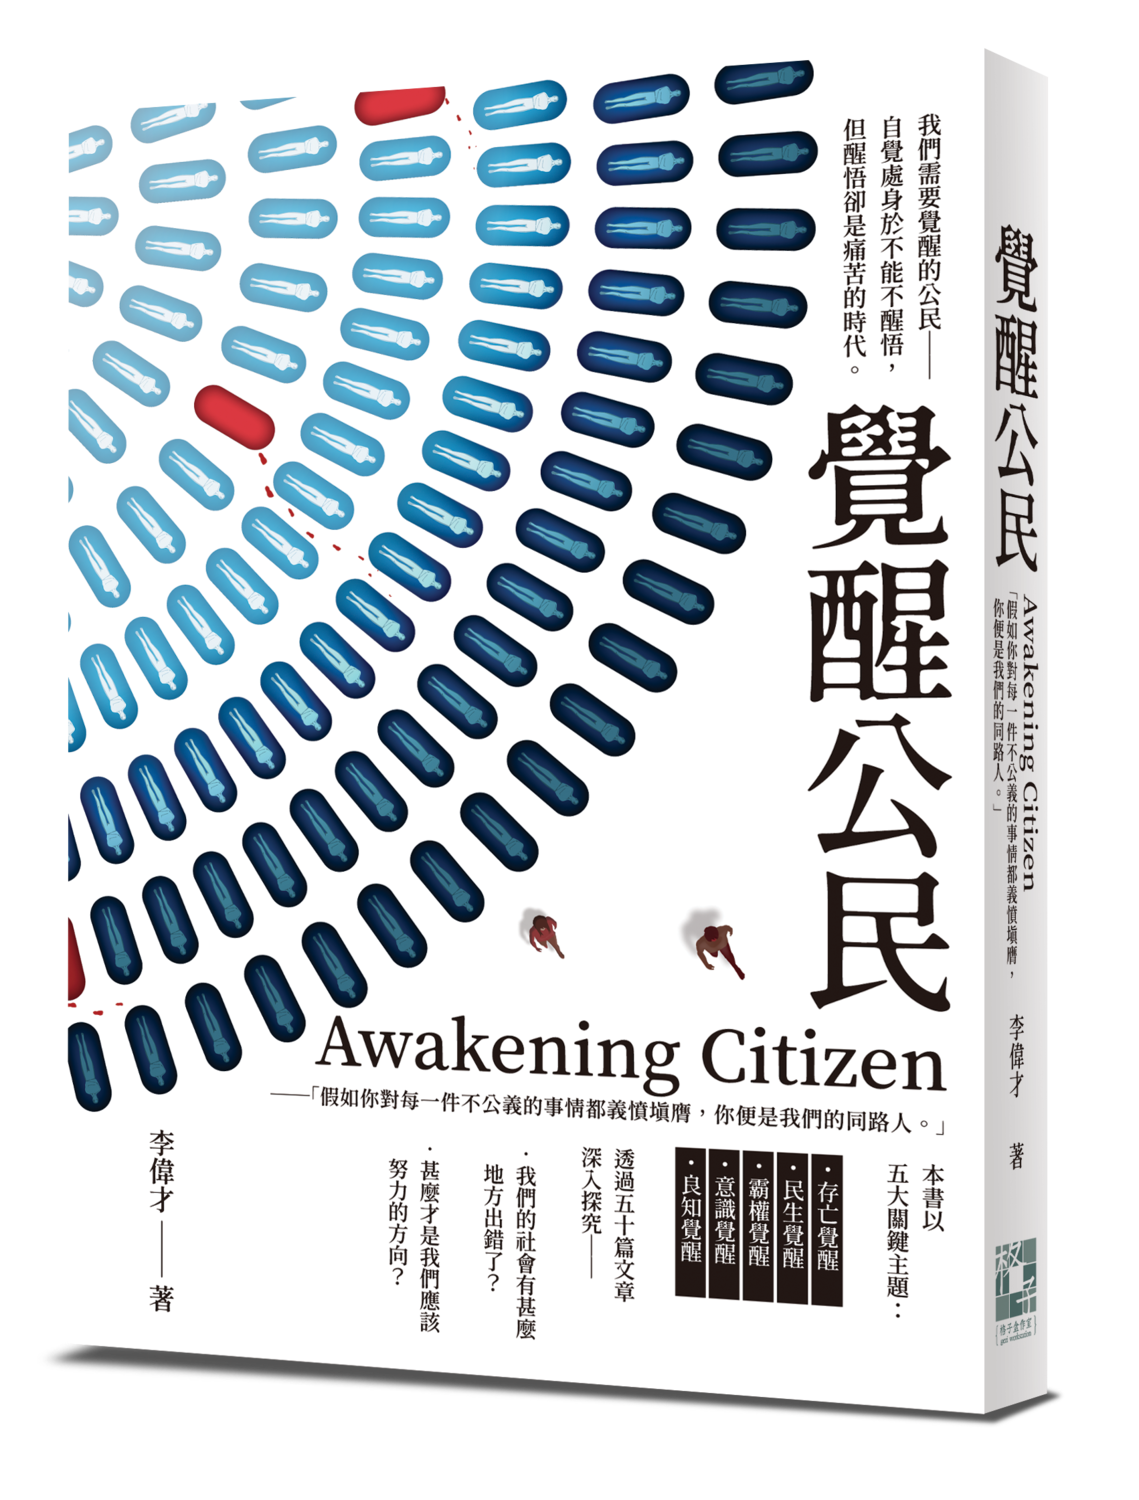 《Awakening Citizen覺醒公民》